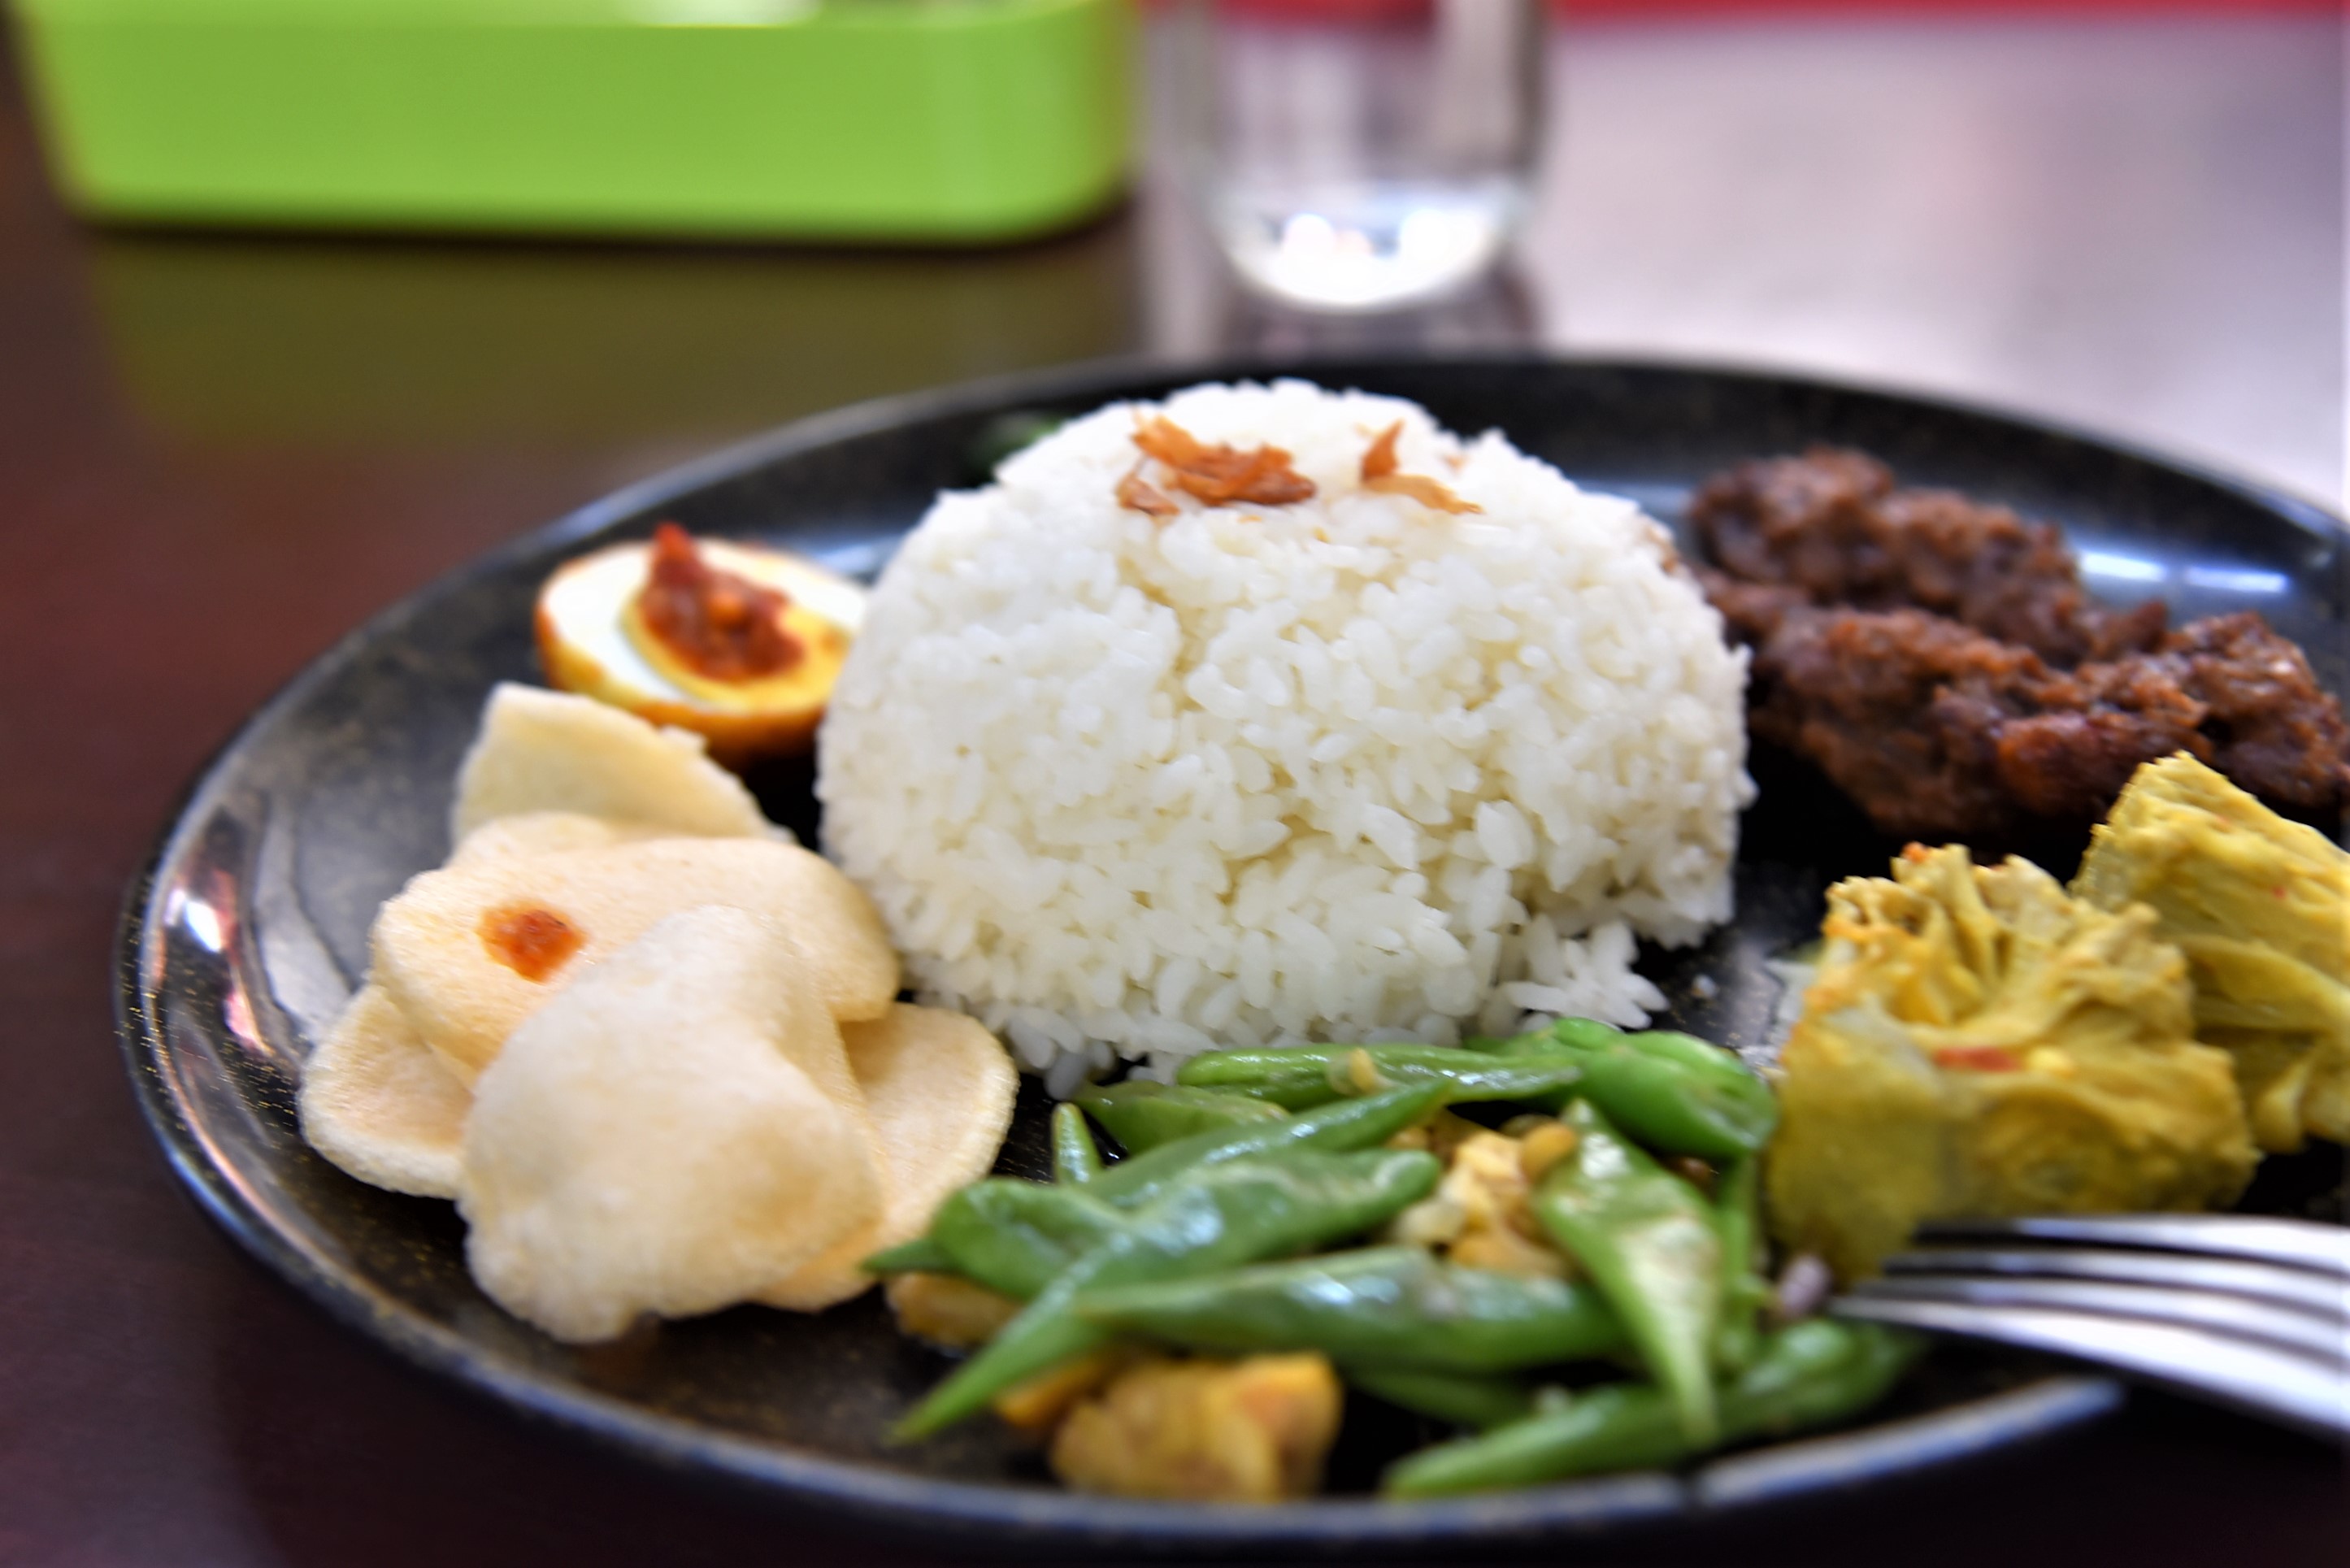 印尼傳統美食。(謝宜汝攝影)